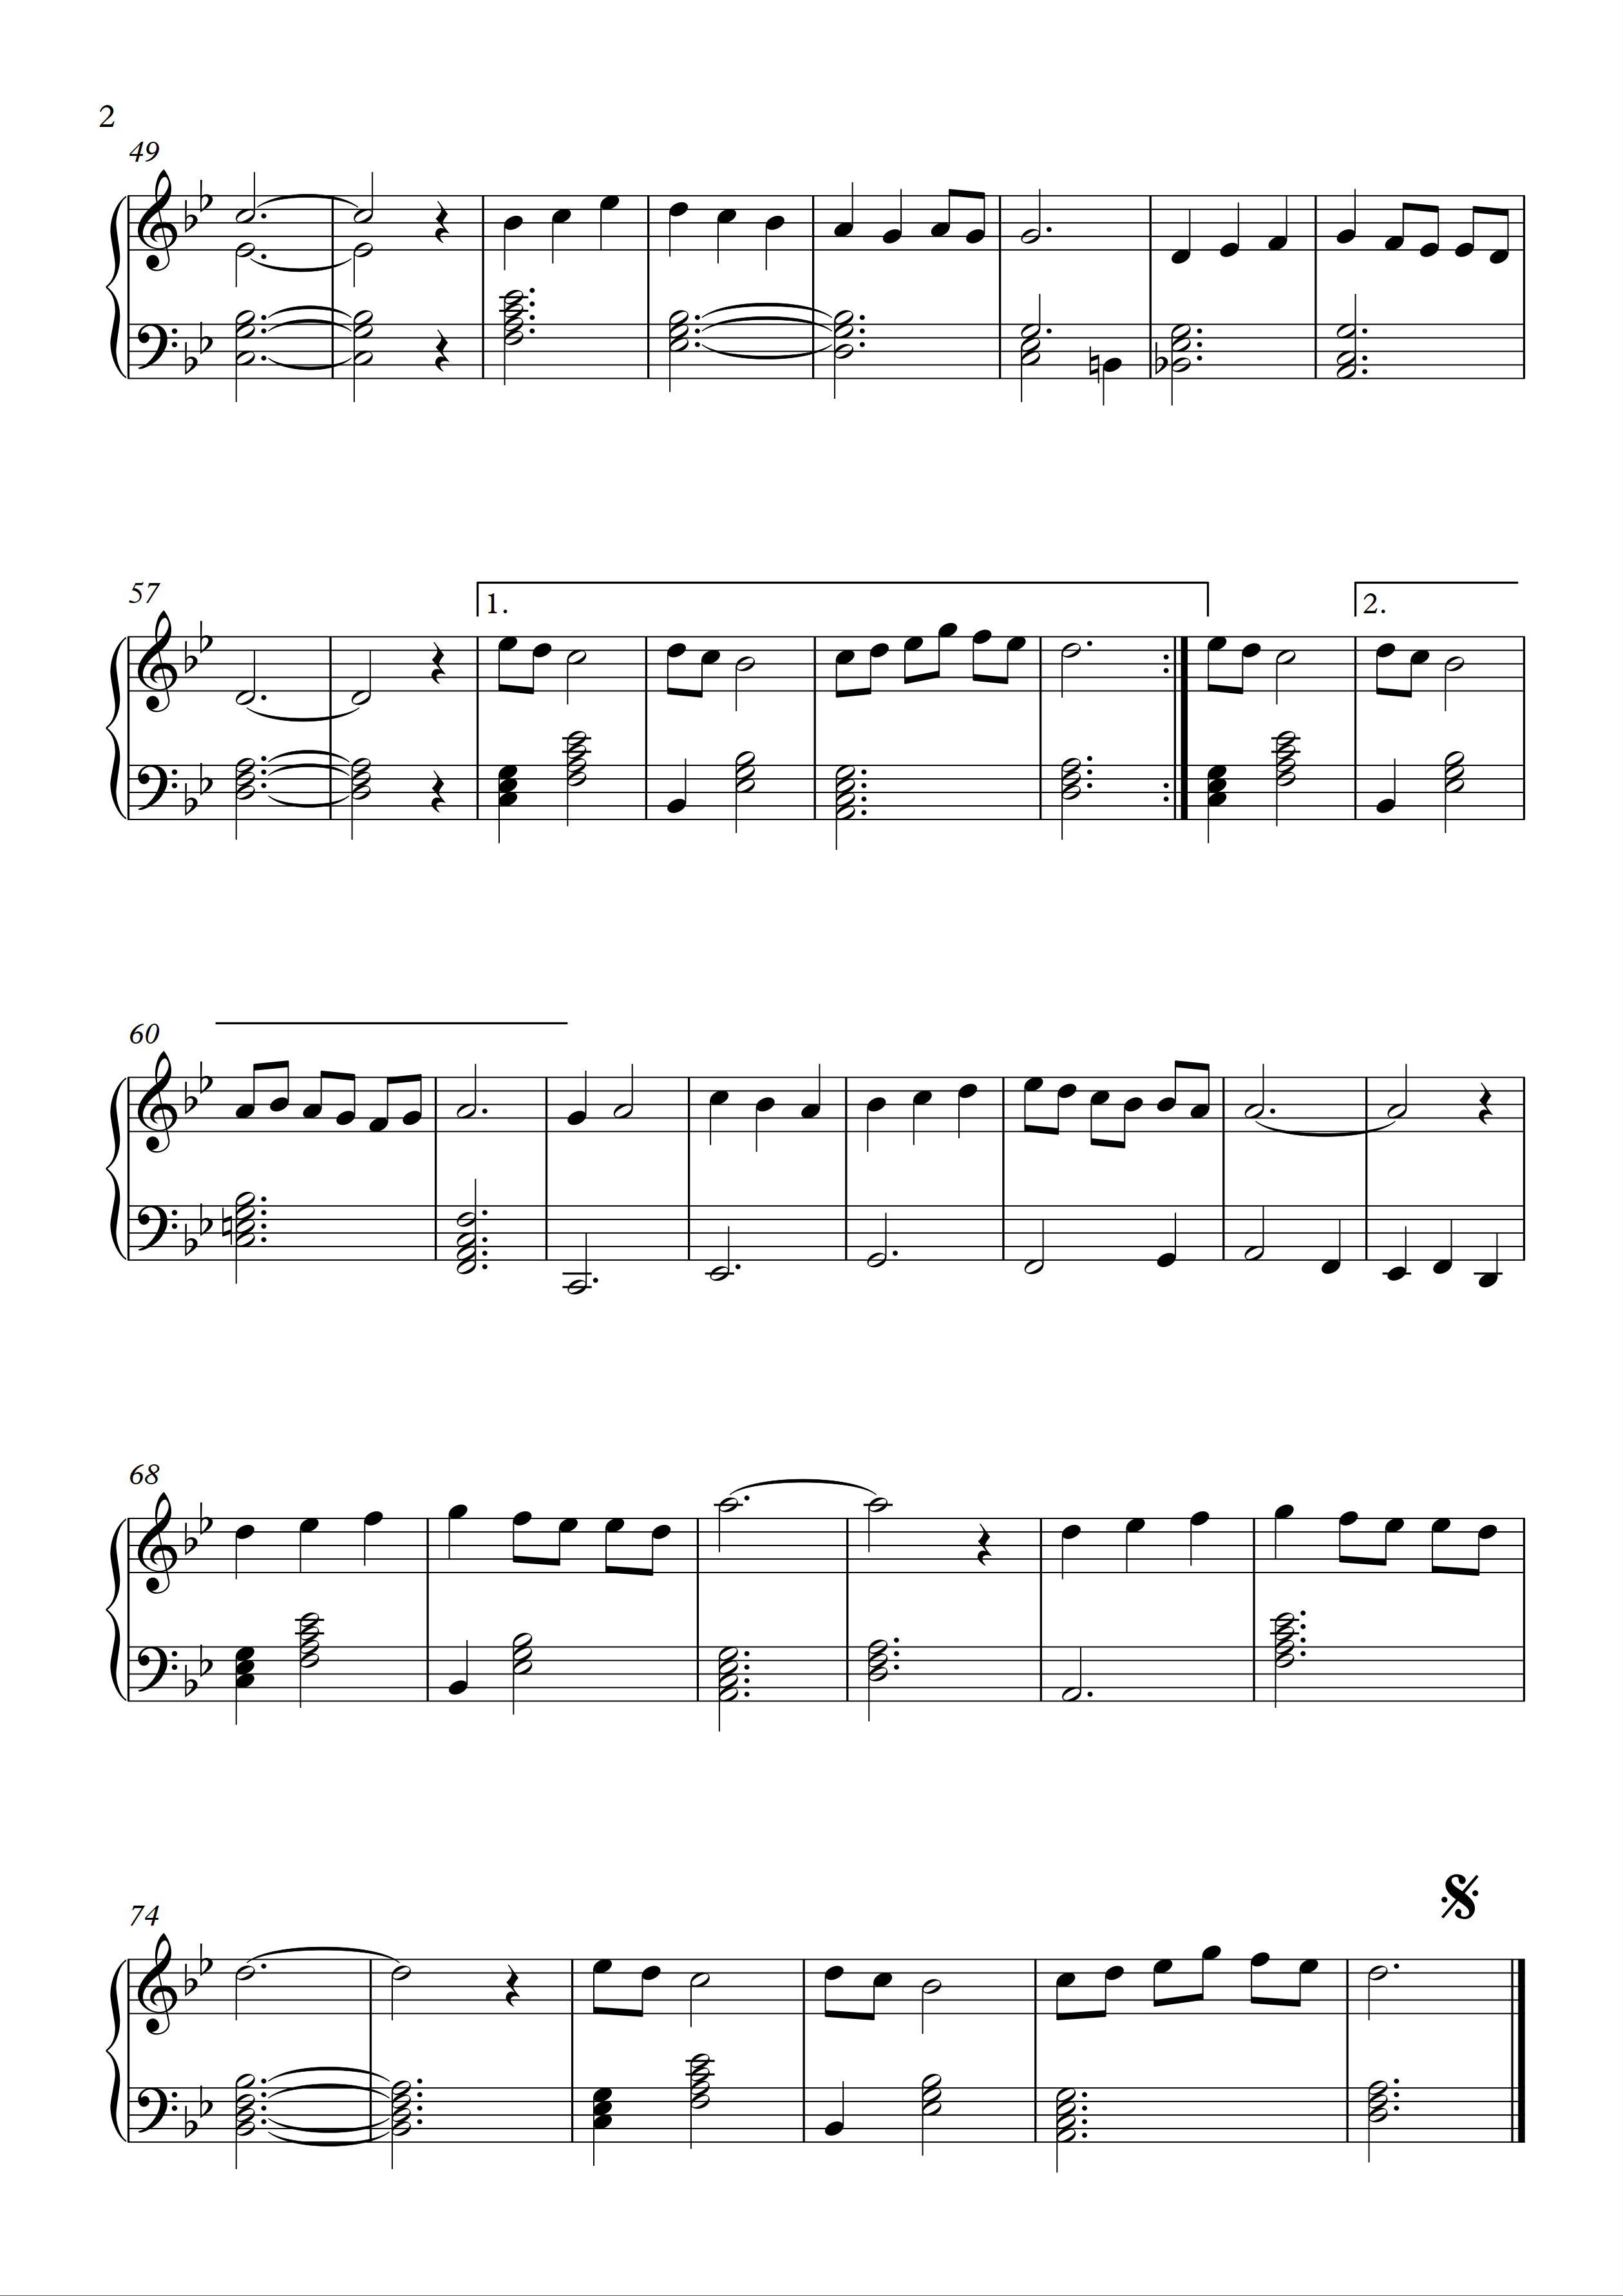 Gel Sen Bize Akşam Yine Mehtap Görünsün Kürdilihicazkar Notaları Sayfa 2 Beste Muzaffer İlkar Piyano Nota Ve Armoni Güneş Yakartepe